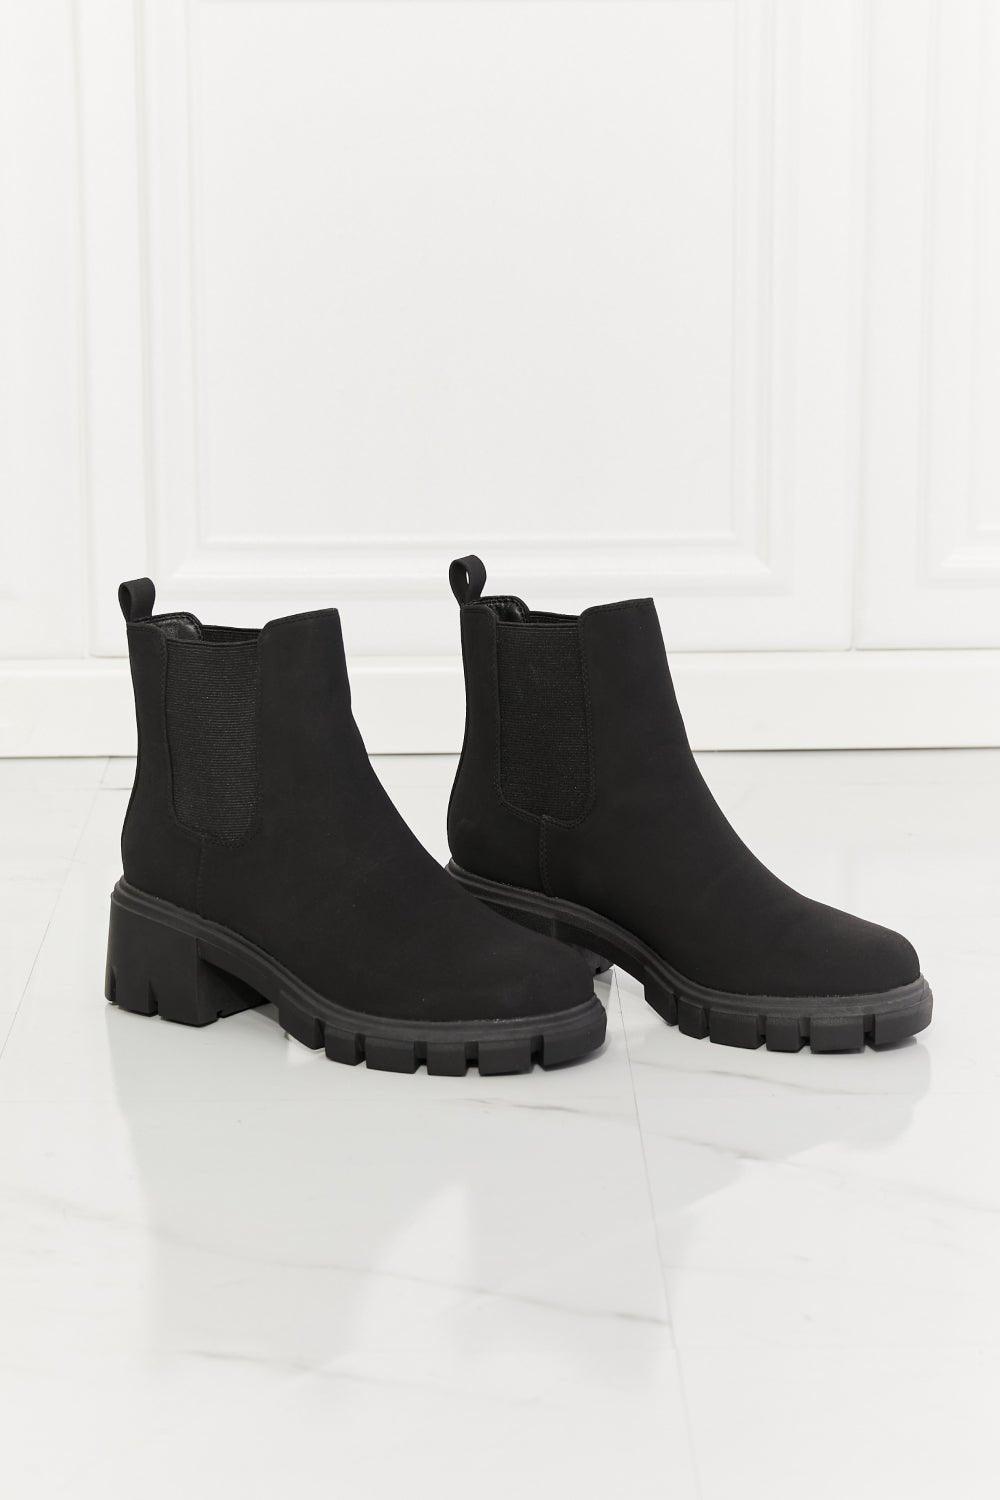 Black Chelsea Boots - Klazzi Fashion Boutique